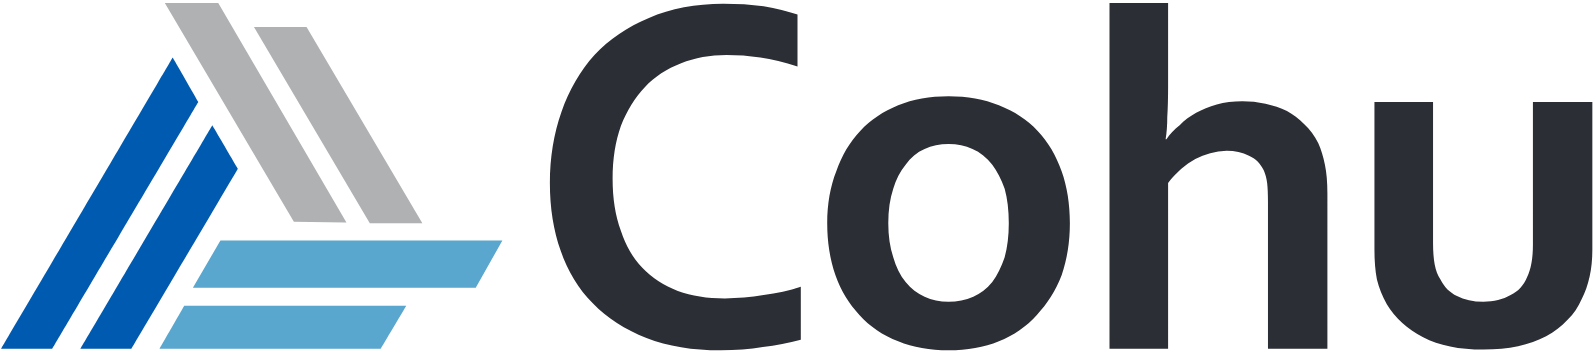 Cohu logo large (transparent PNG)